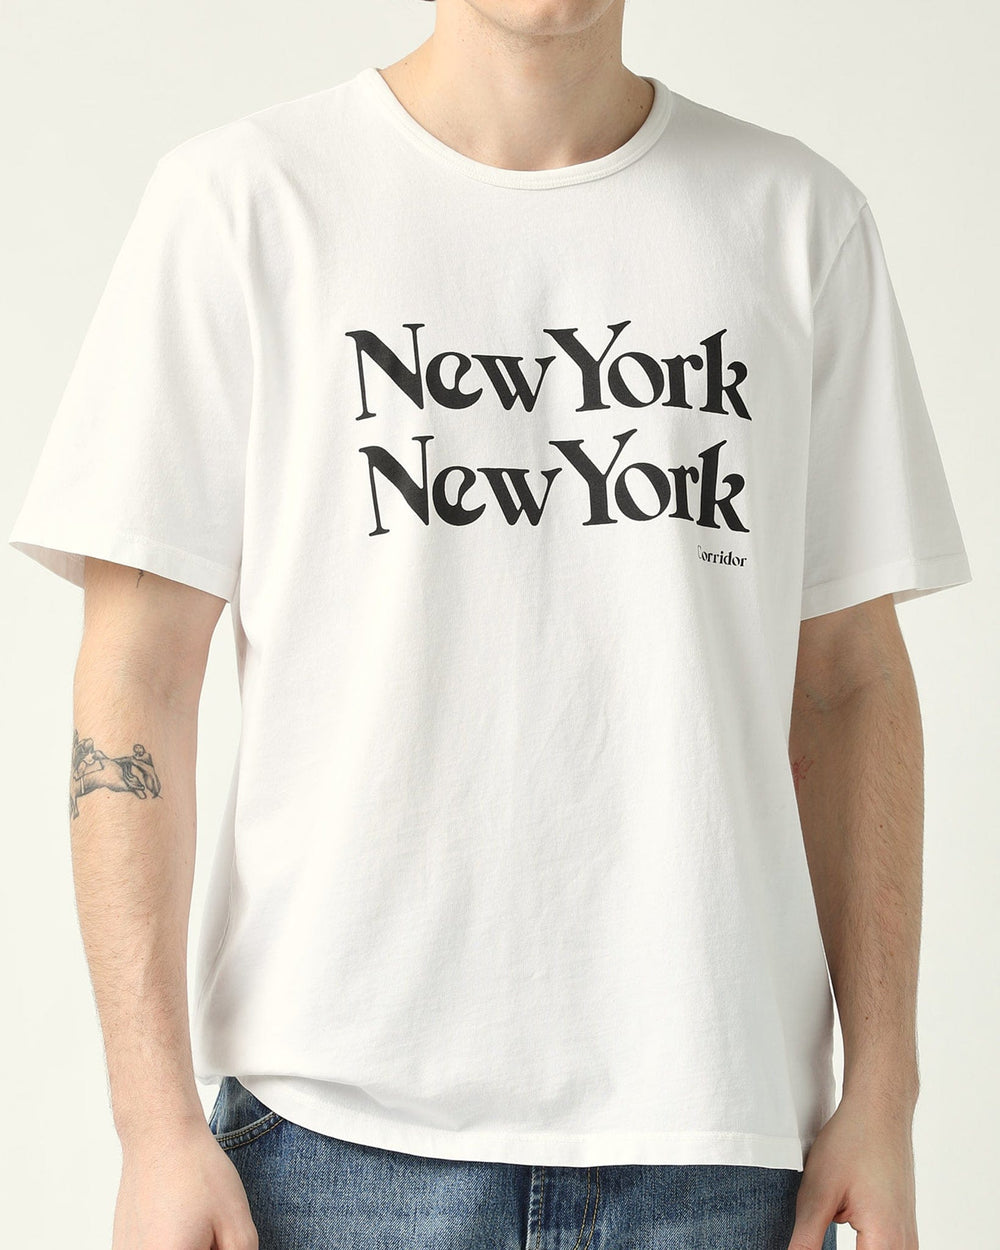 New York New York T-Shirt - White